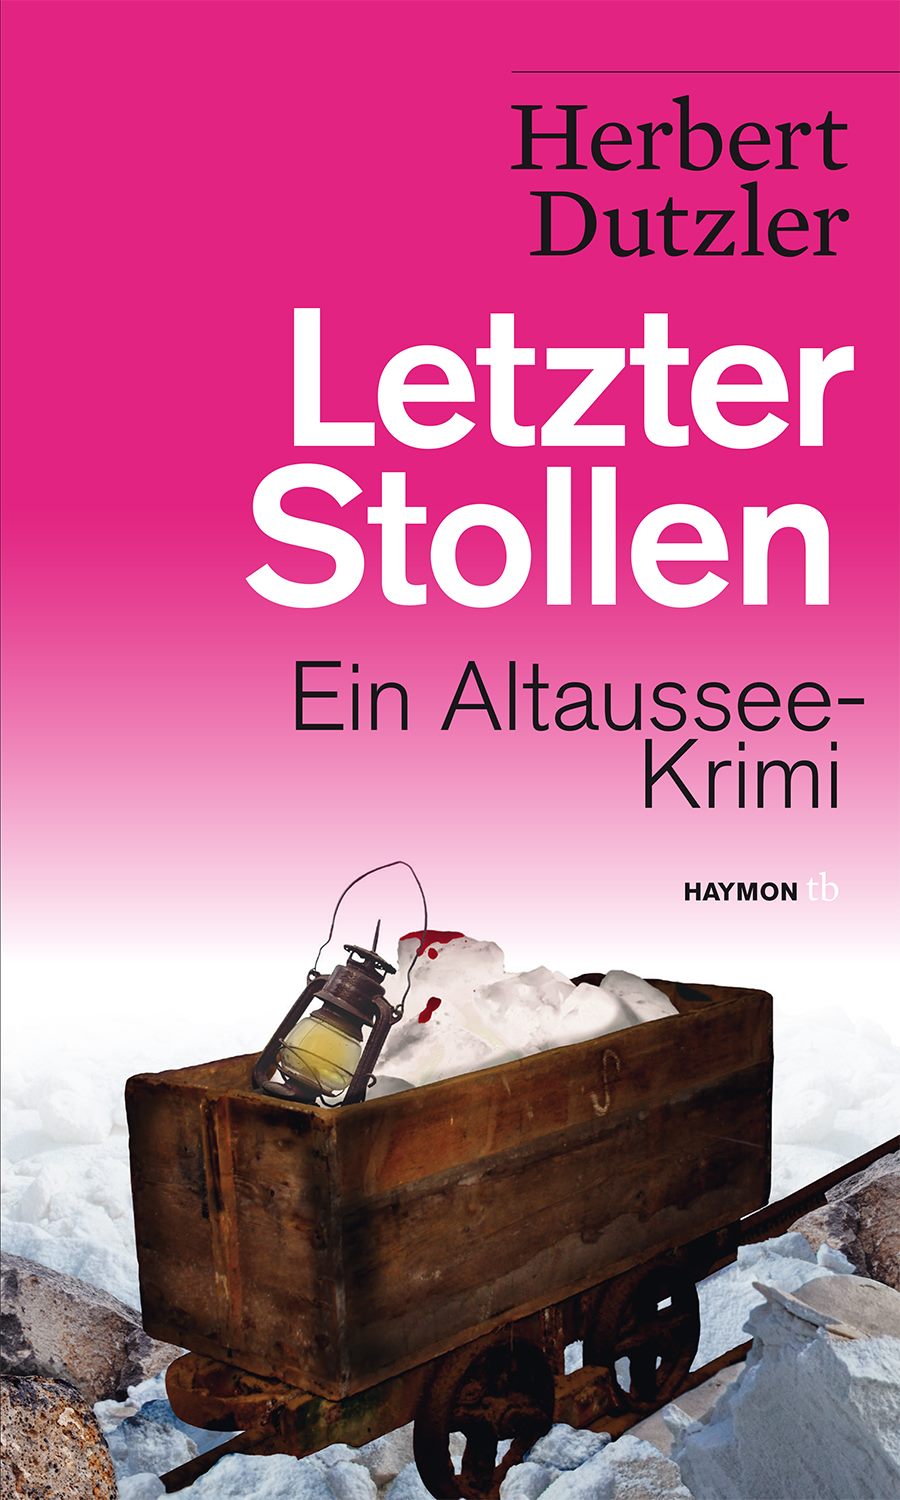 Dutzler_LetzterStollen_Cover